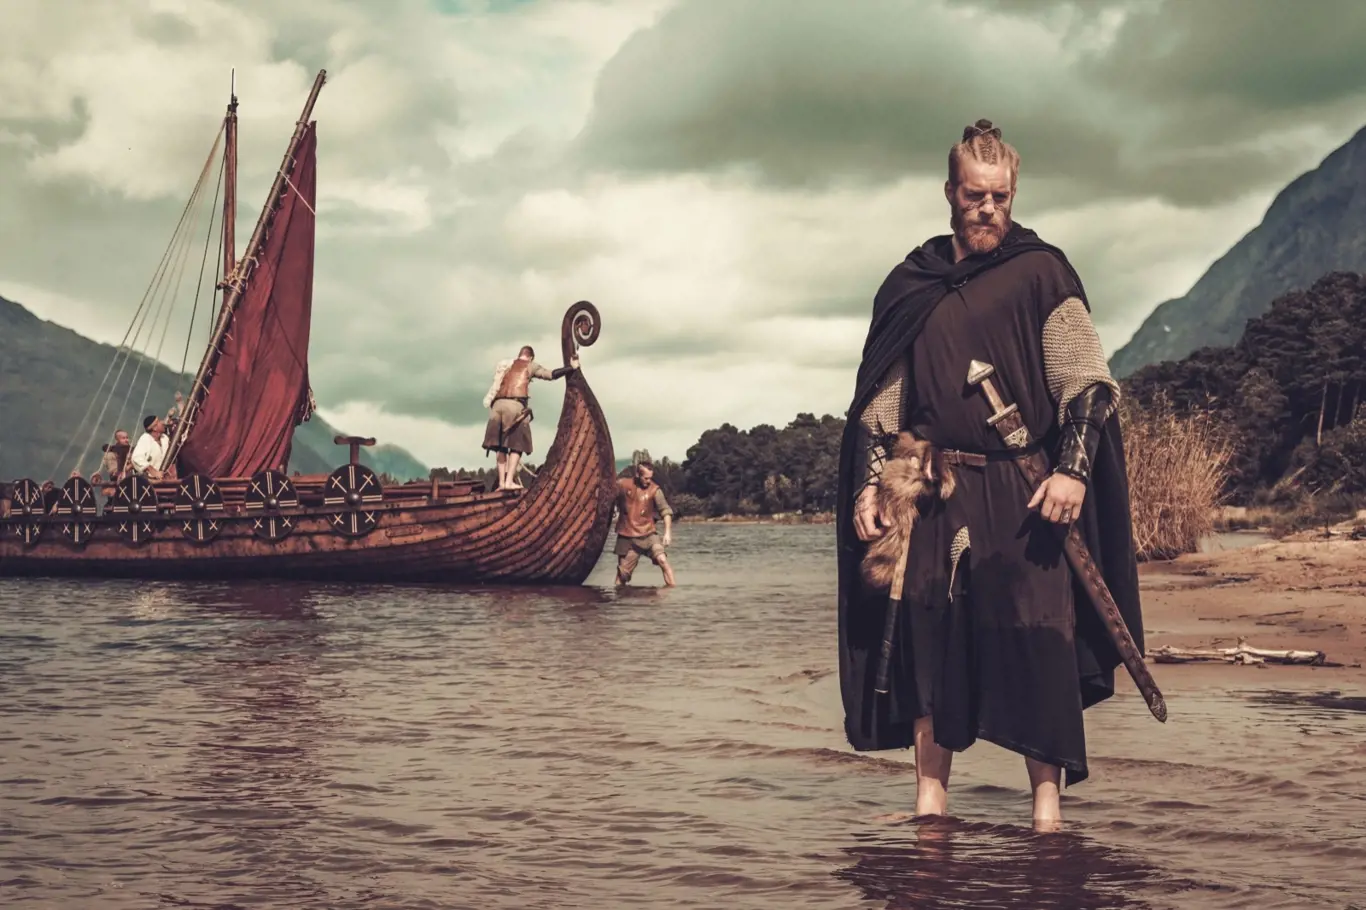 Když se řekne jídlo a Vikingové, tak nás pravděpodobně jako první napadne představa obrovské honosné hostiny po krvavé bitvě.